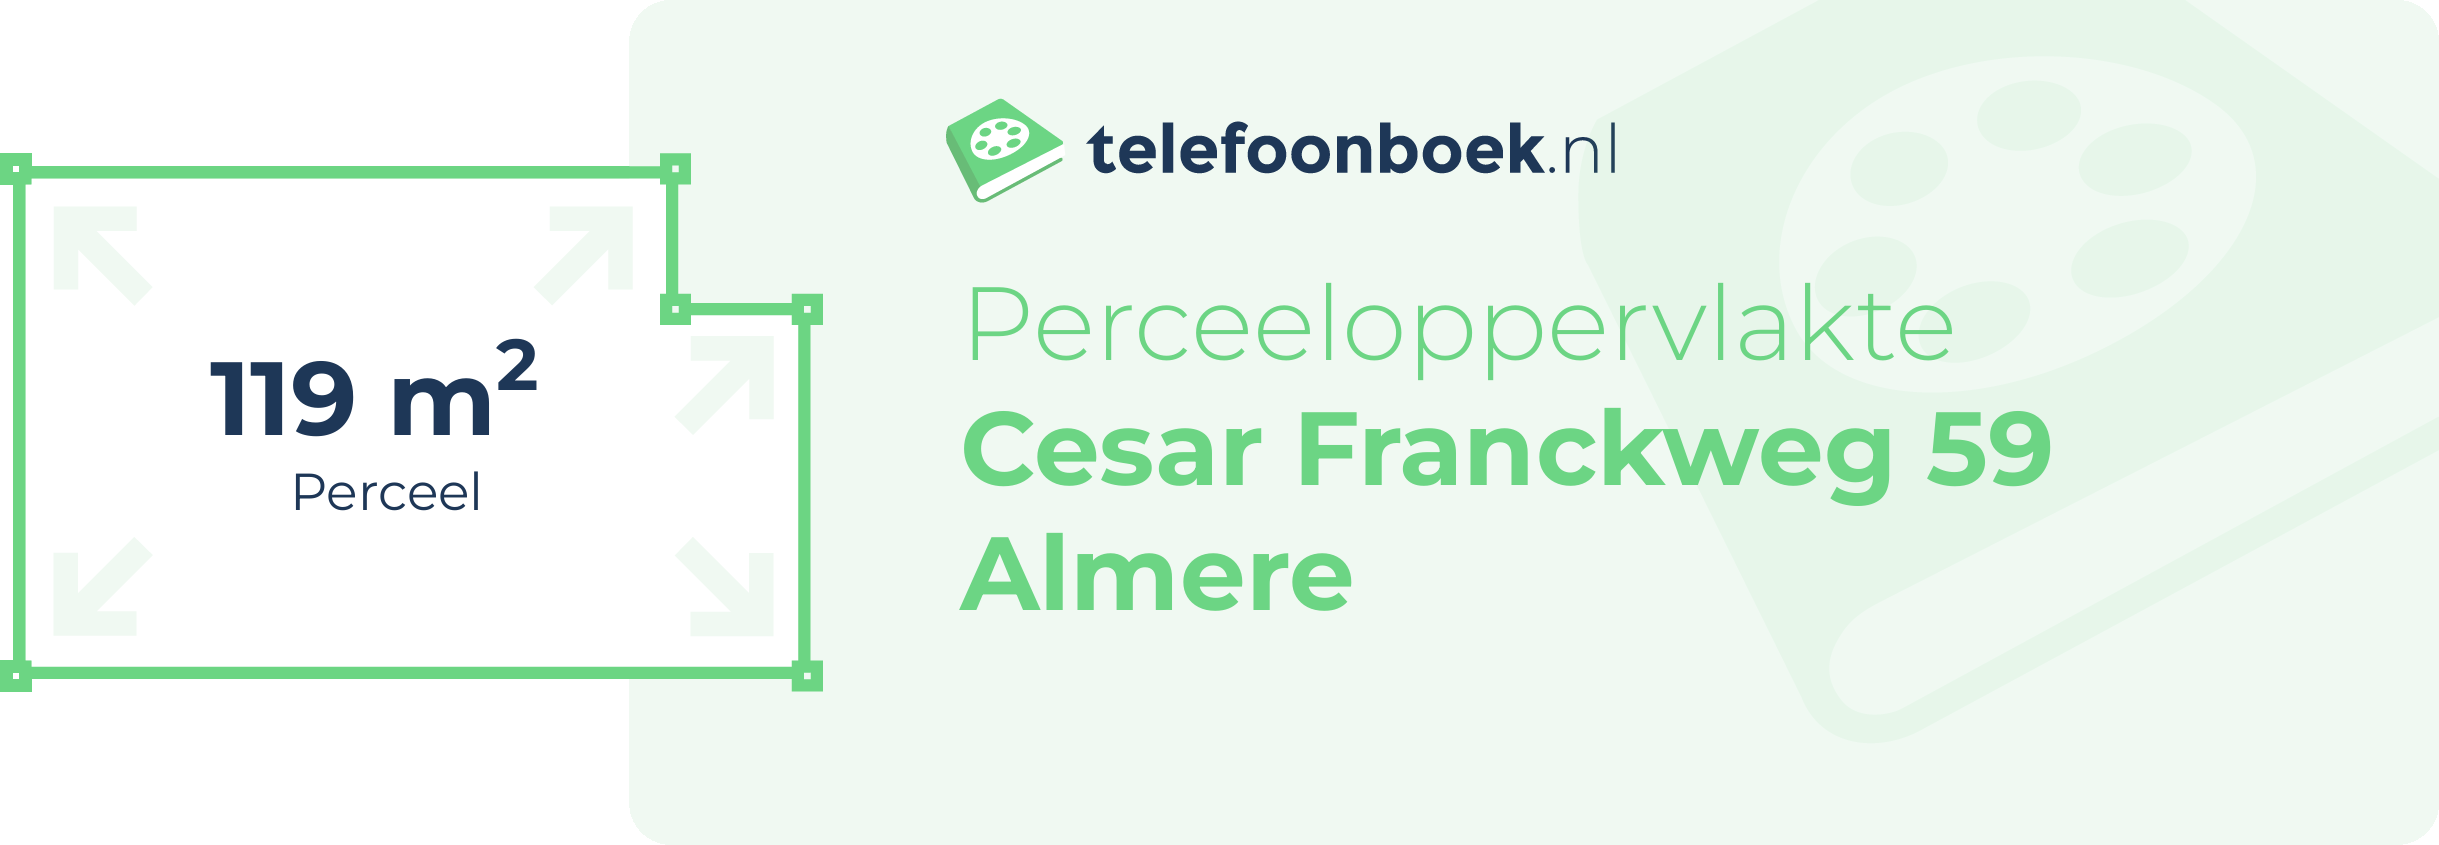 Perceeloppervlakte Cesar Franckweg 59 Almere